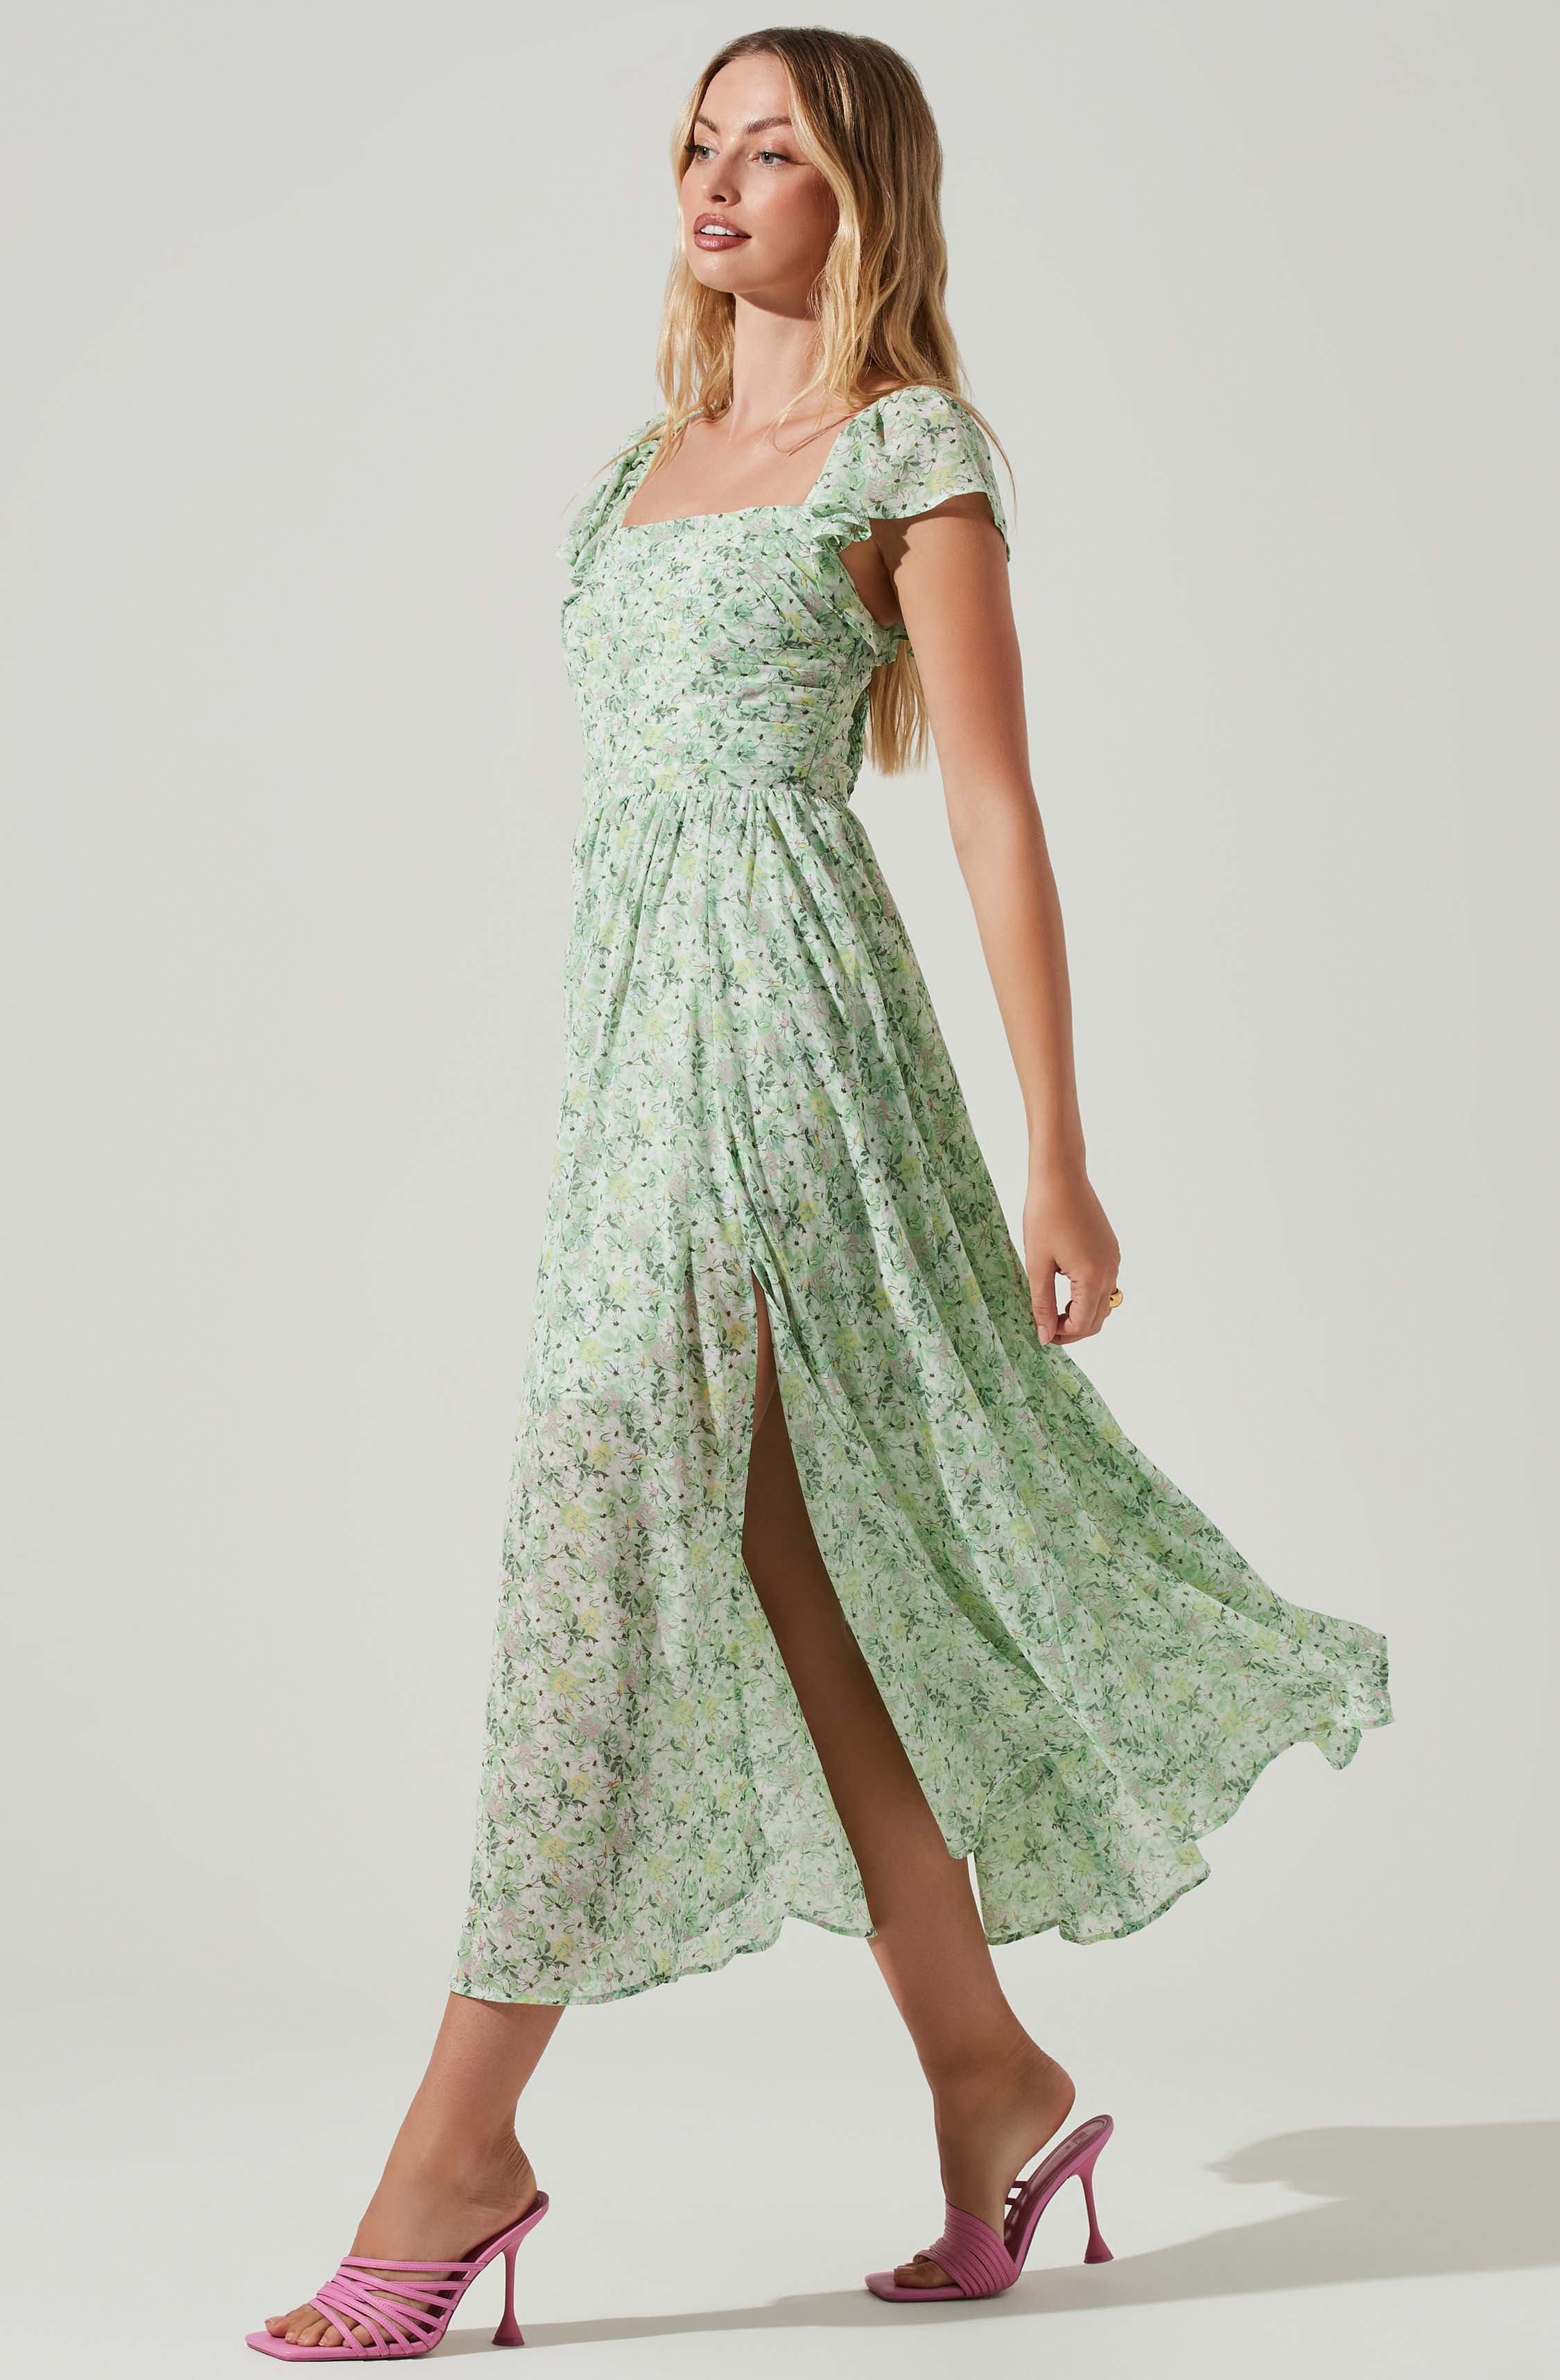 sage green floral dress